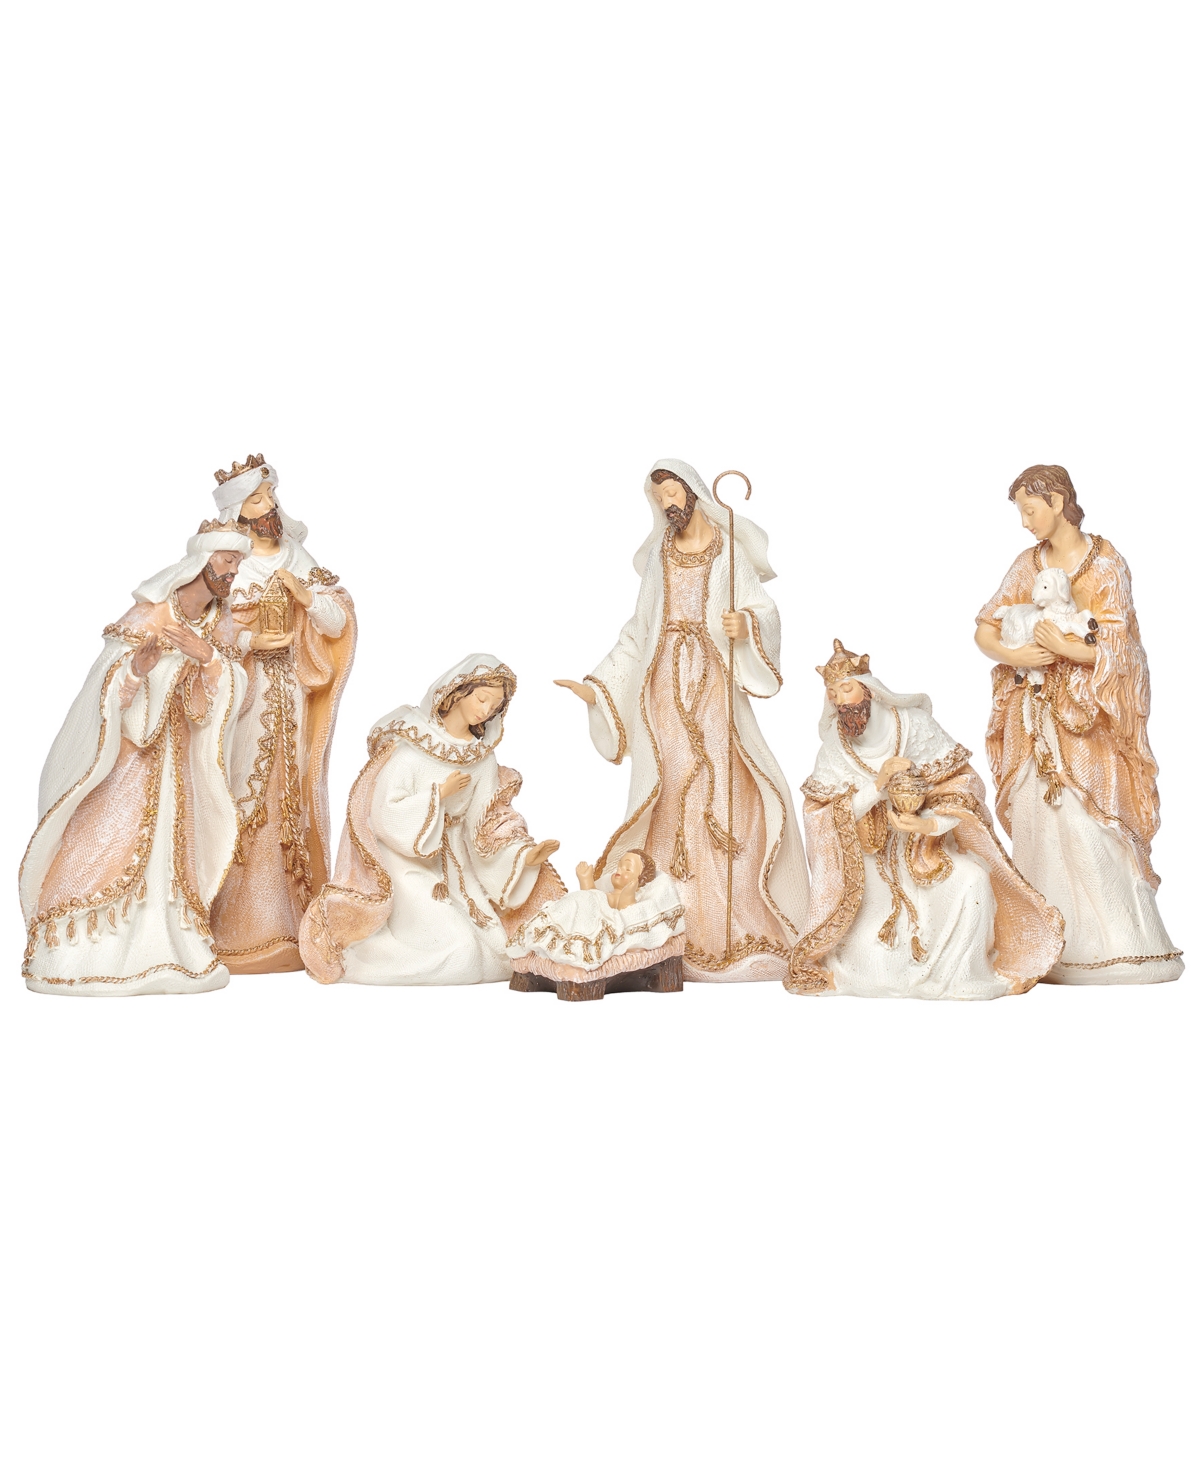 Roman 8.5" H 7 Piece Set Nativity Woven In Multi Color